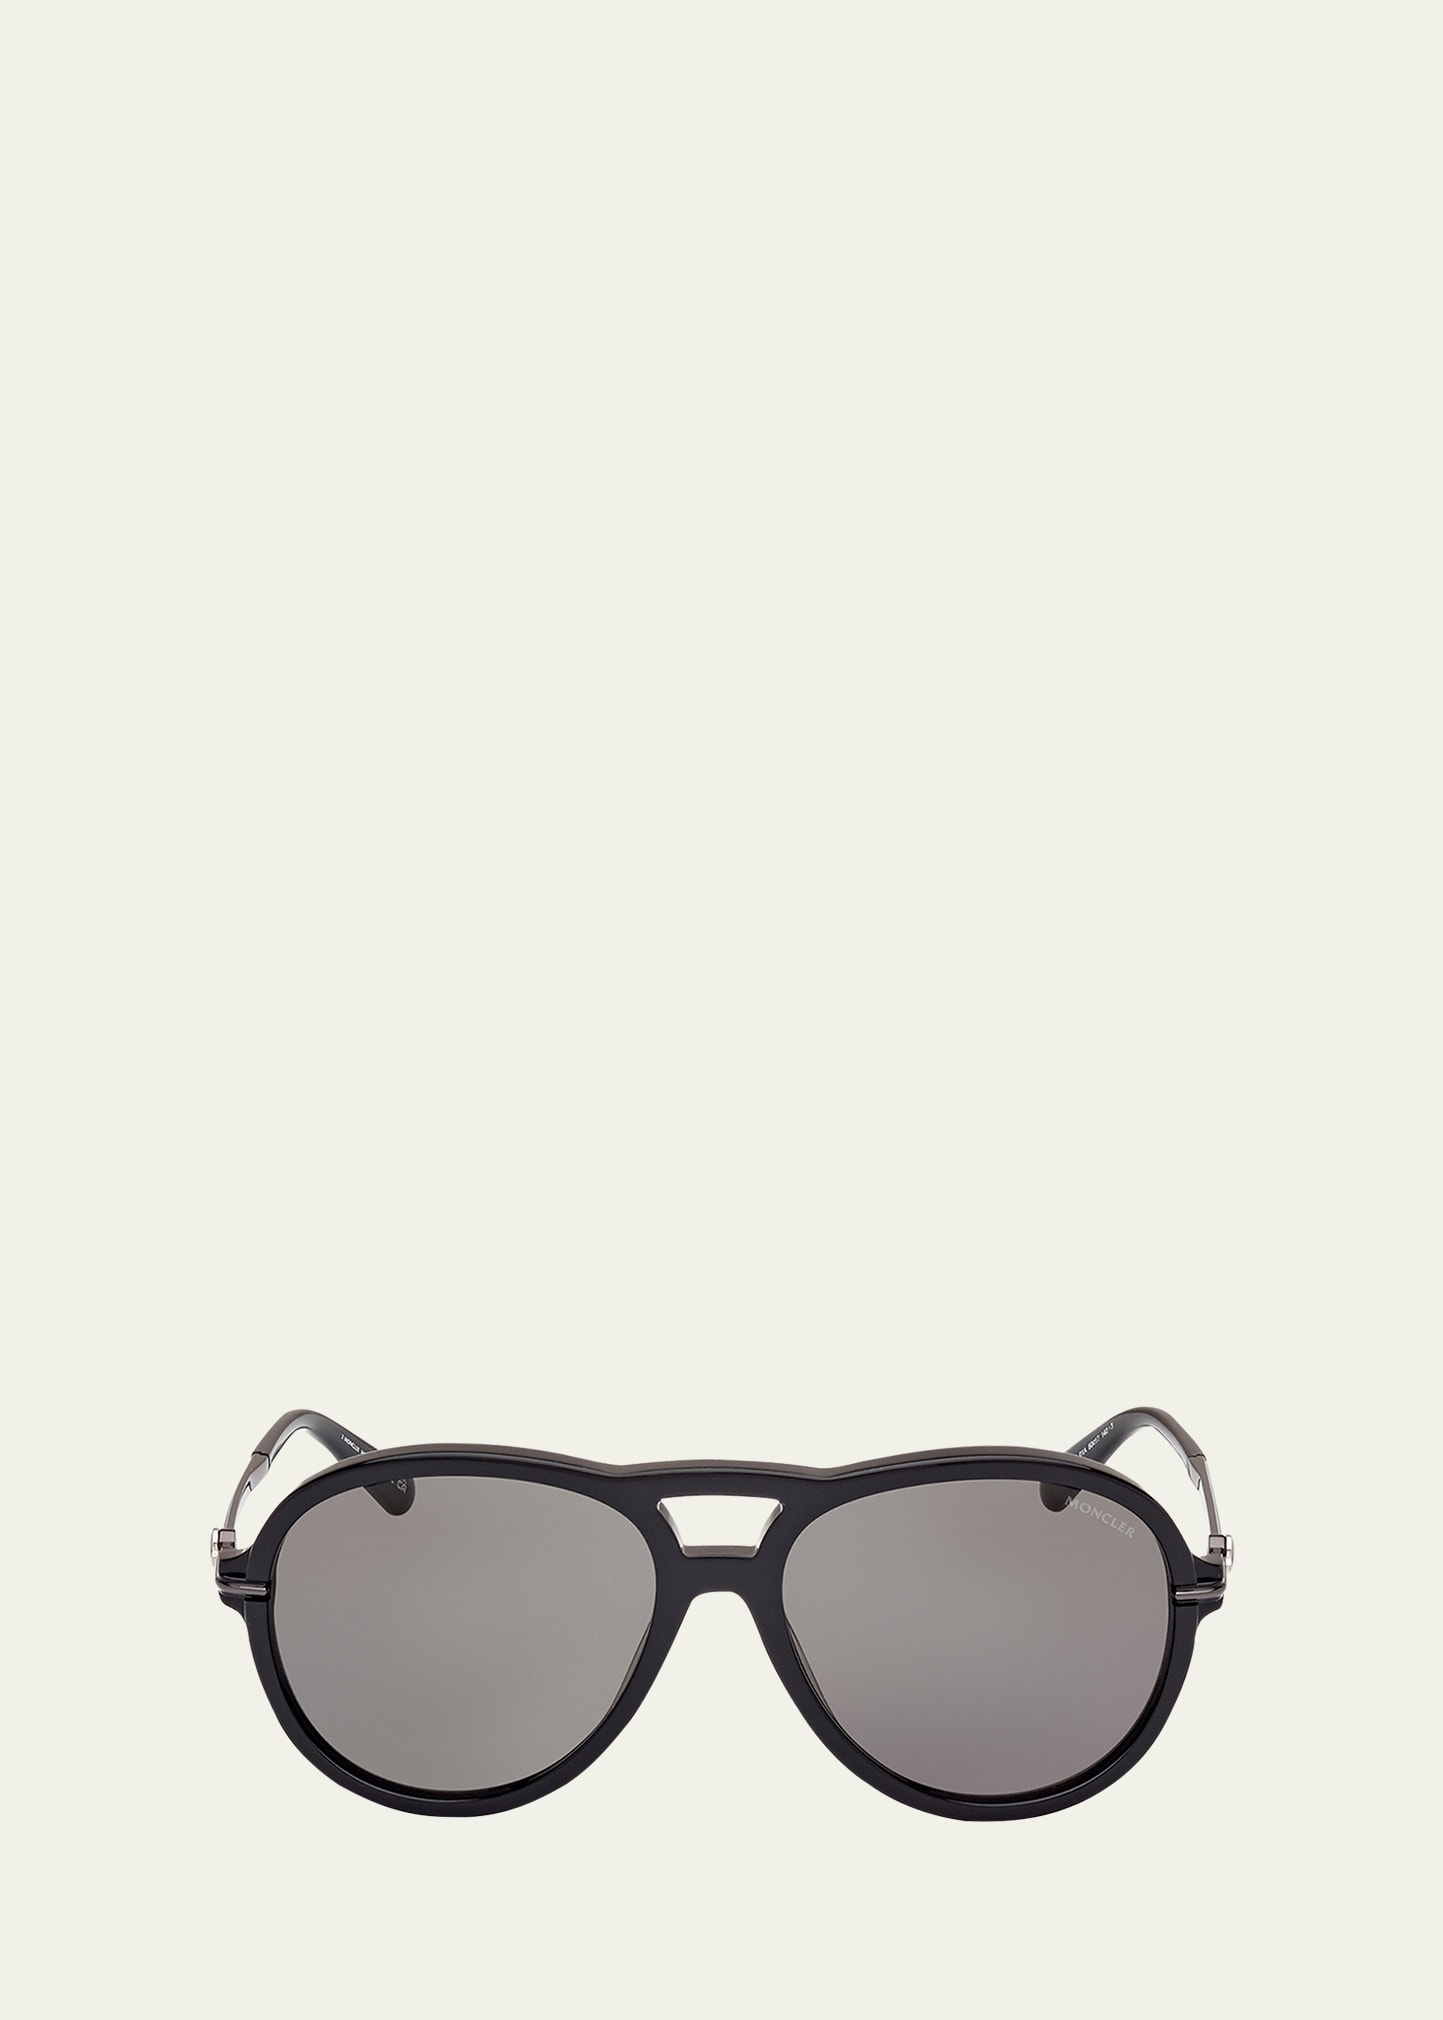 Moncler Men's Peake Acetate Round Sunglasses In Black Smoke